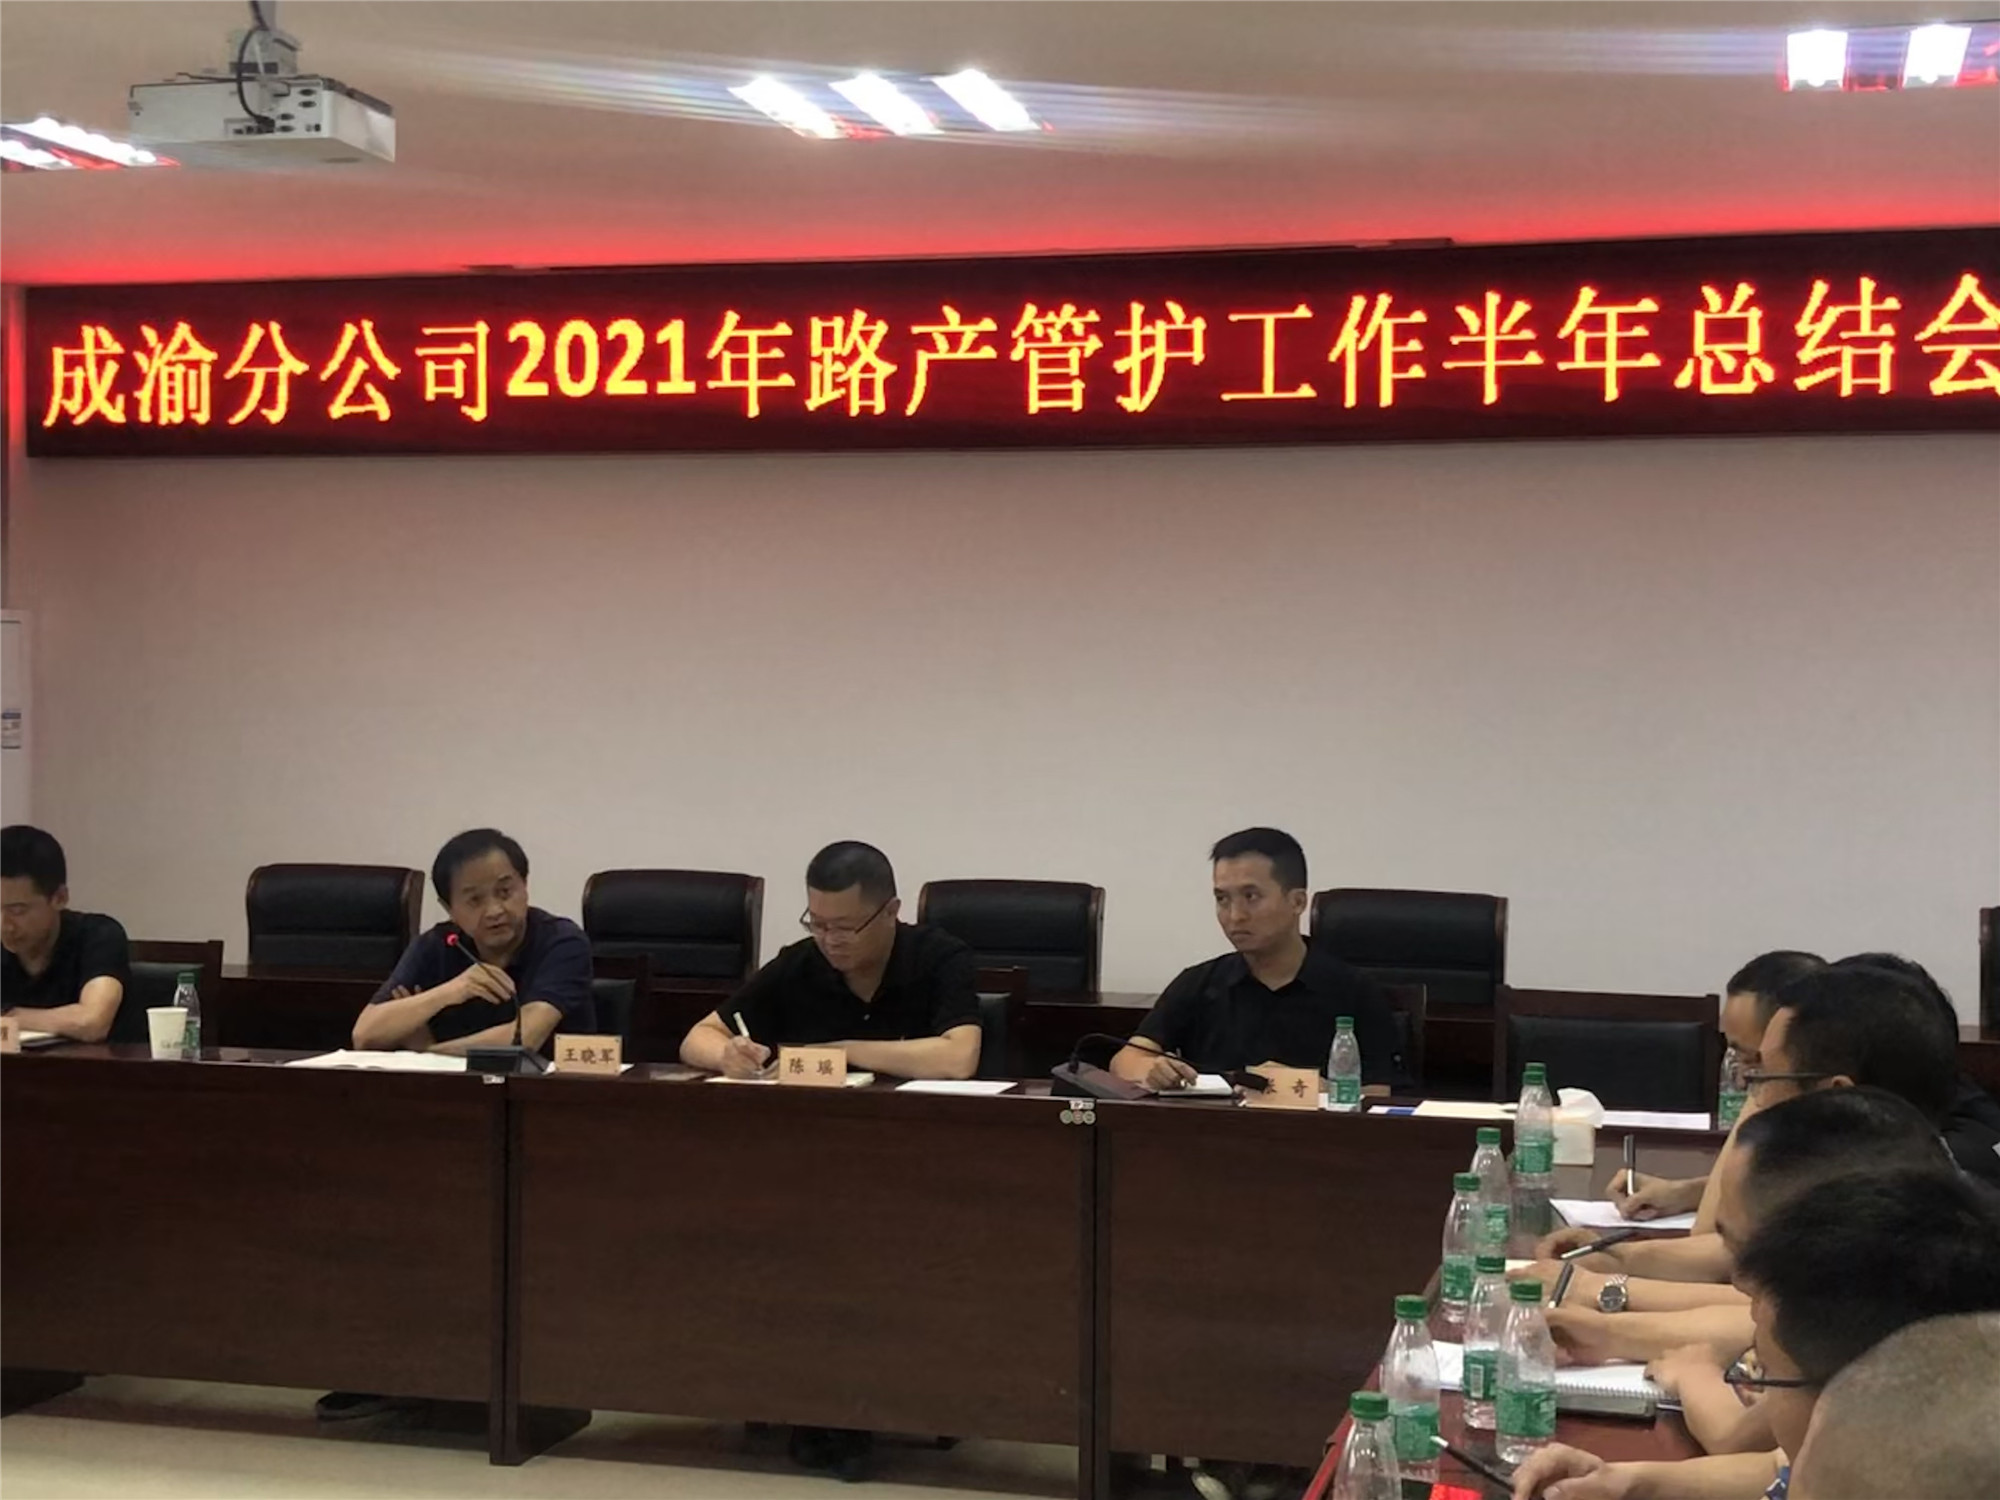 2021.7.18+刘川楠+公司召开2021年上半年安全环保暨路产管护总结会_副本